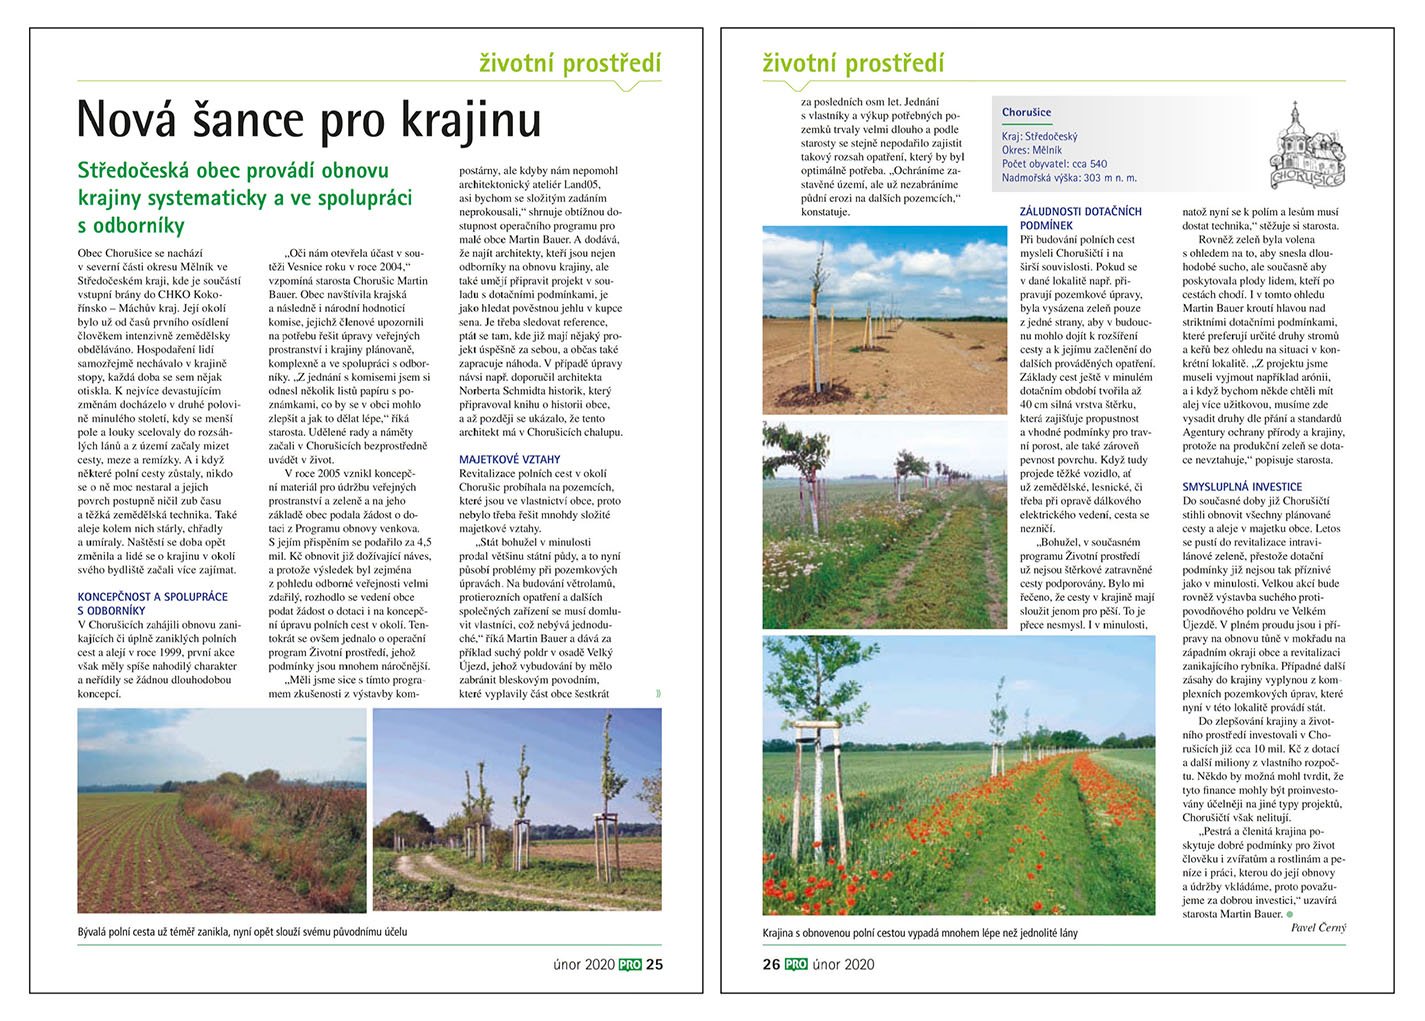 Magazine Pro města a obce 02/2020 - Landscape Projects in Villages